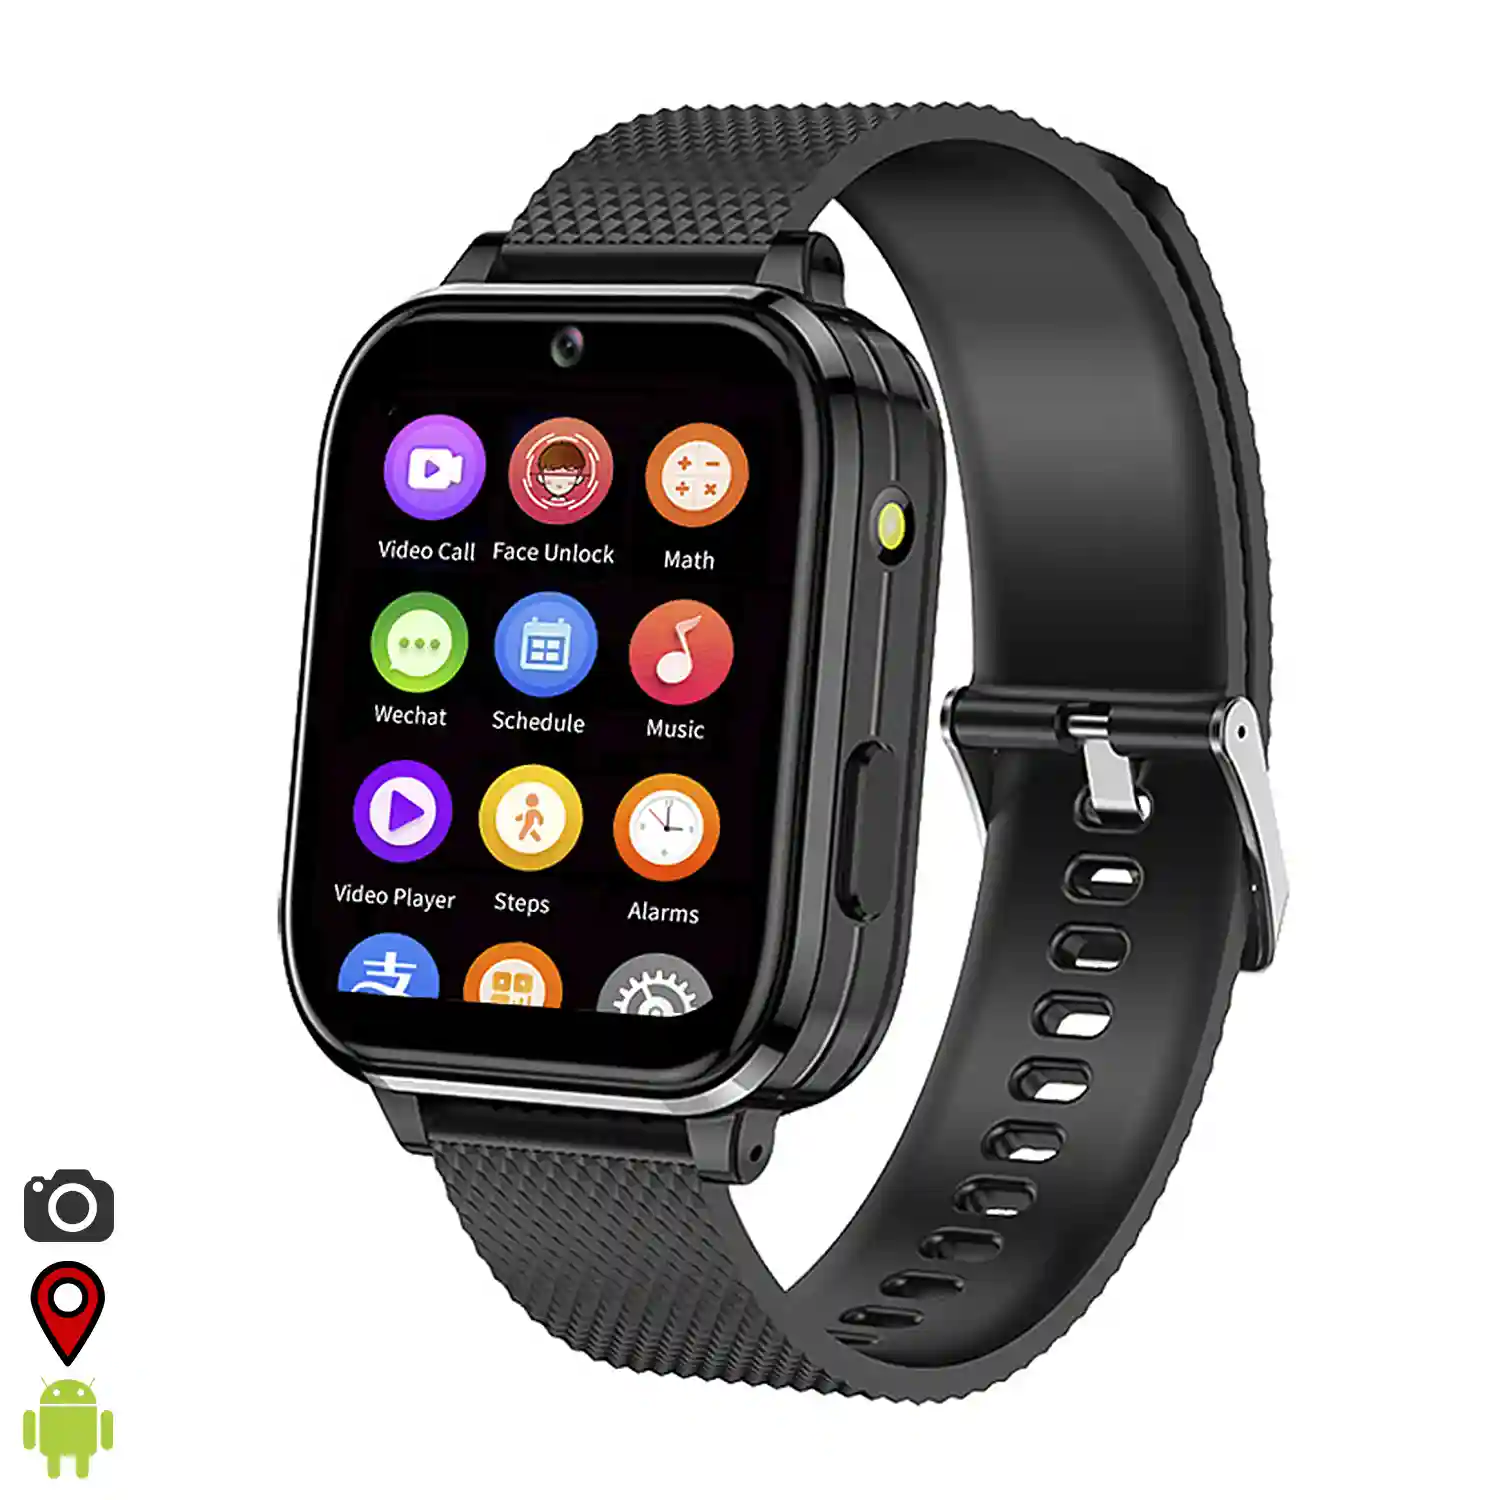 Smartwatch Phone T36 4G con SO Android incorporado. Funciones